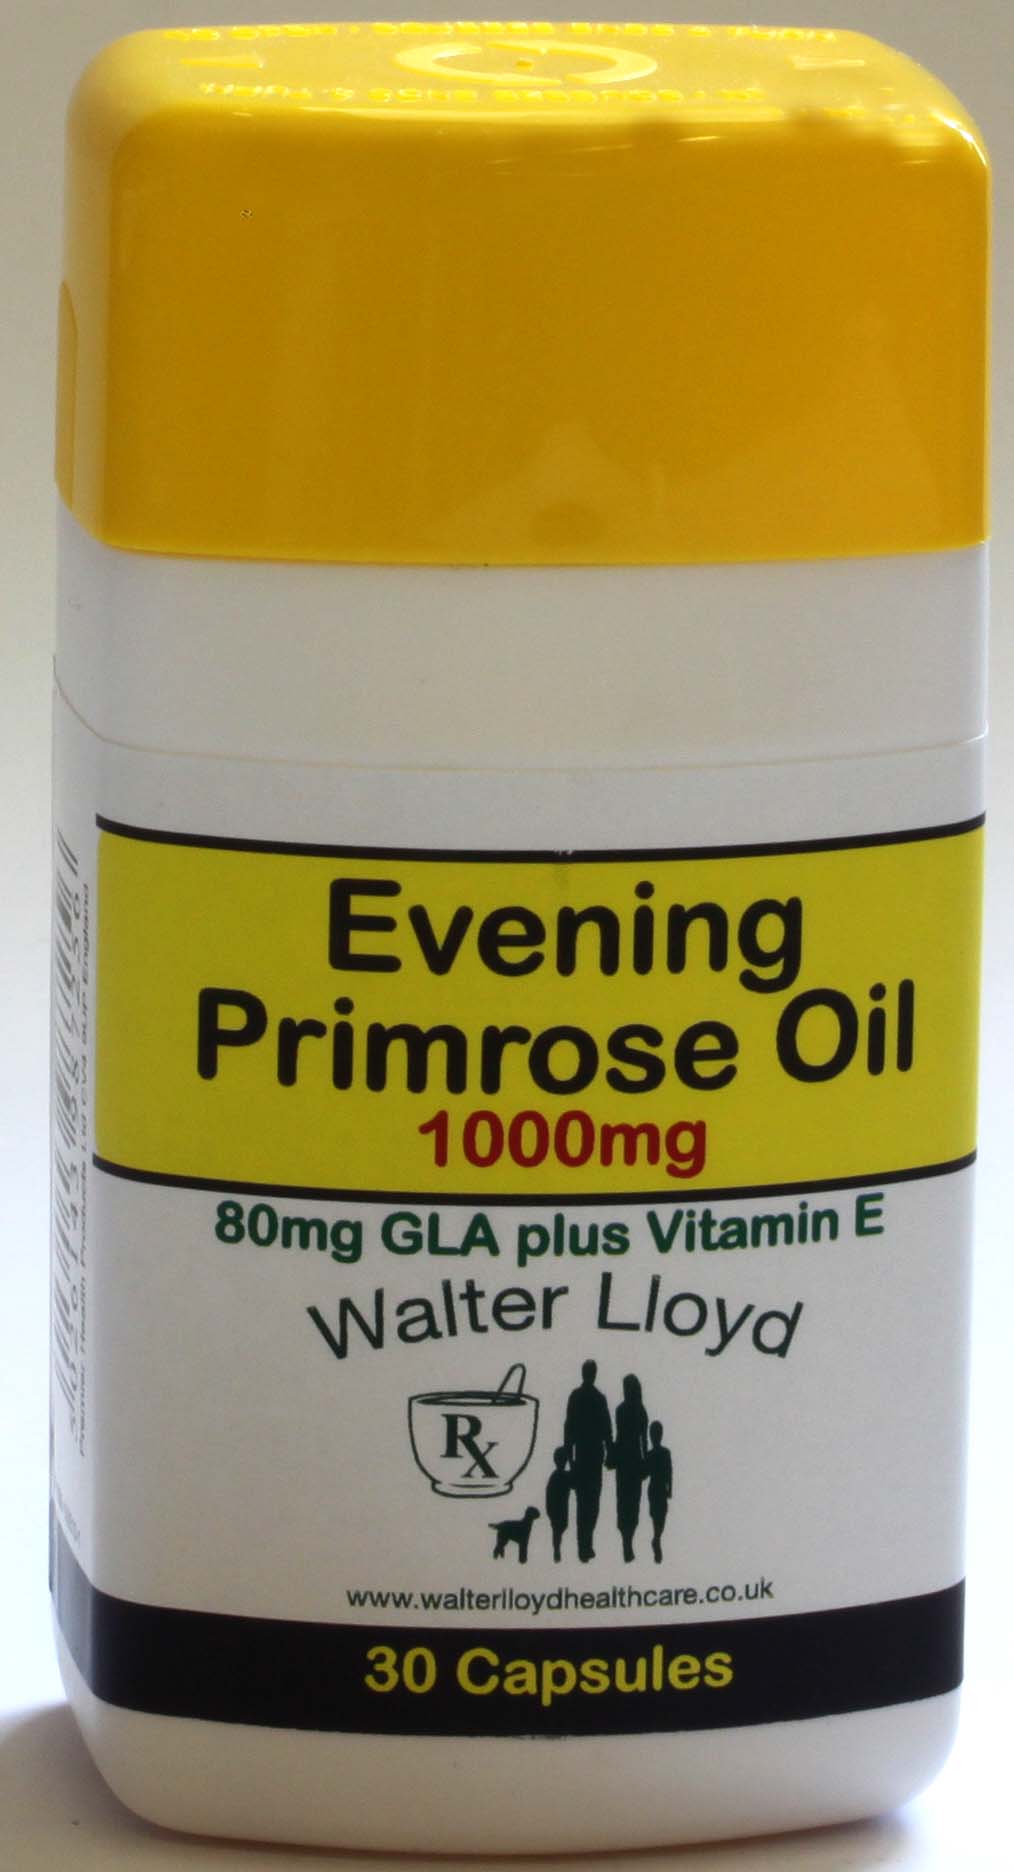 Evening Primrose Oil 1000mg - 30 Capsules